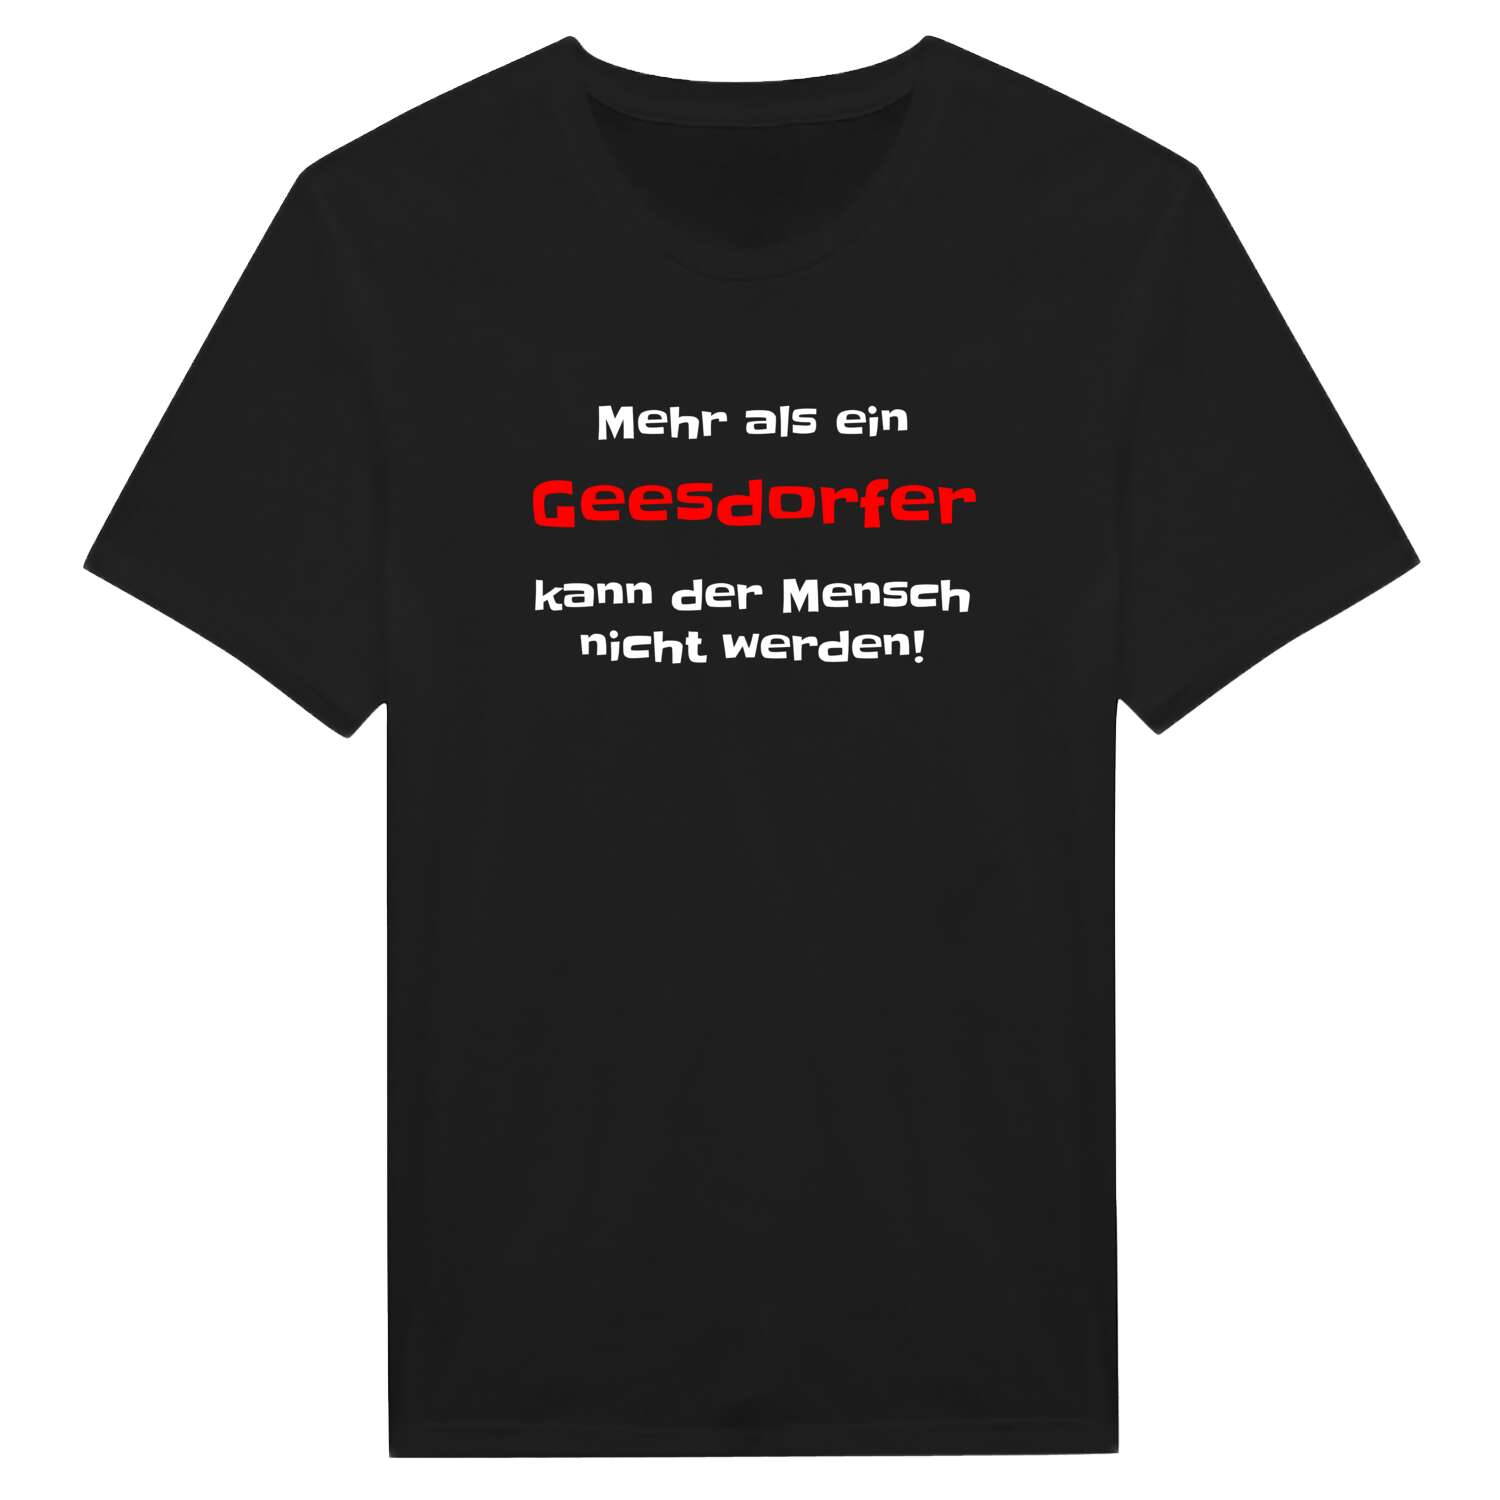 Geesdorf T-Shirt »Mehr als ein«